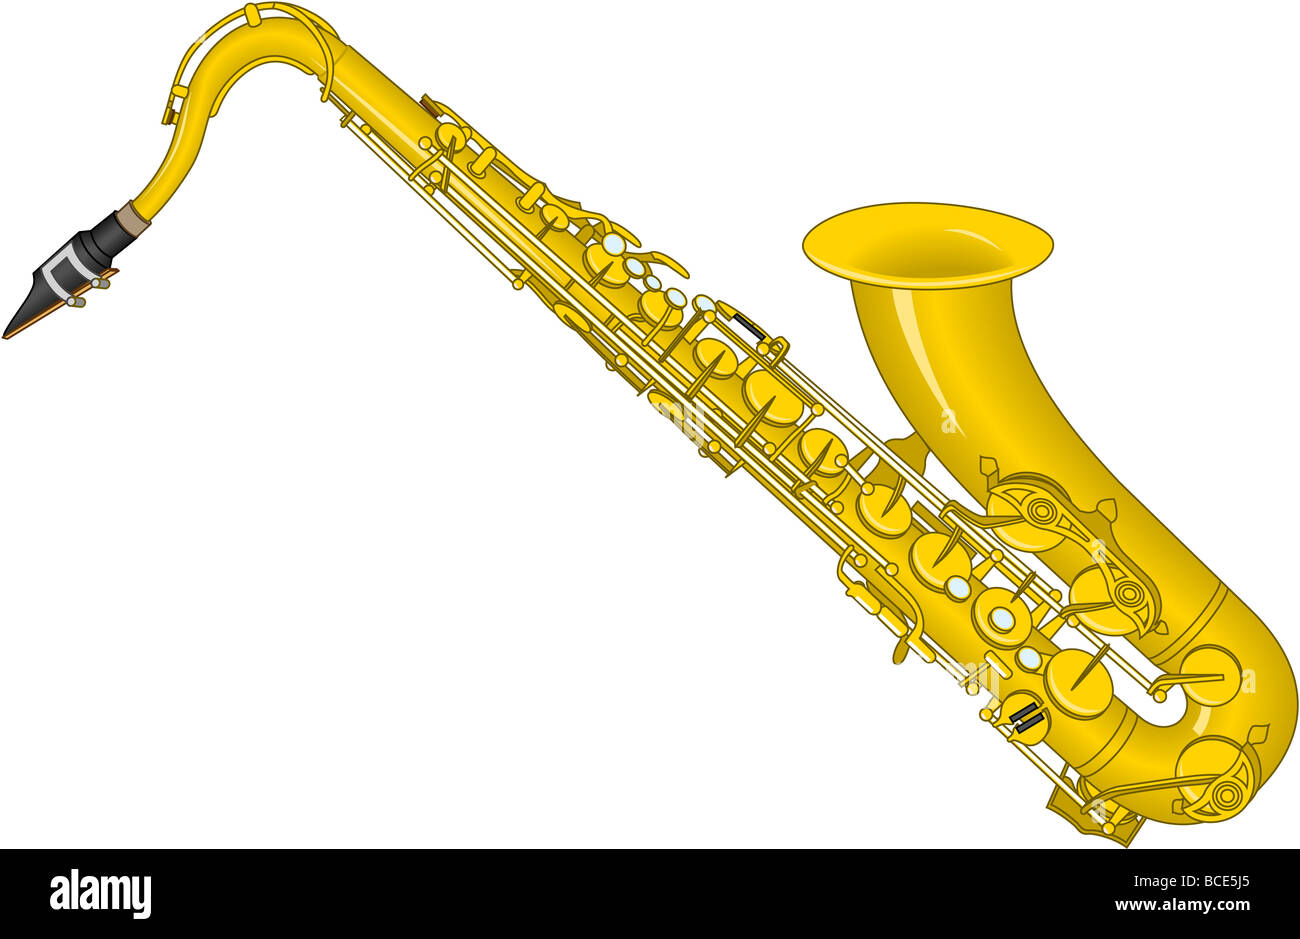 Tenor saxophone. Stock Photo